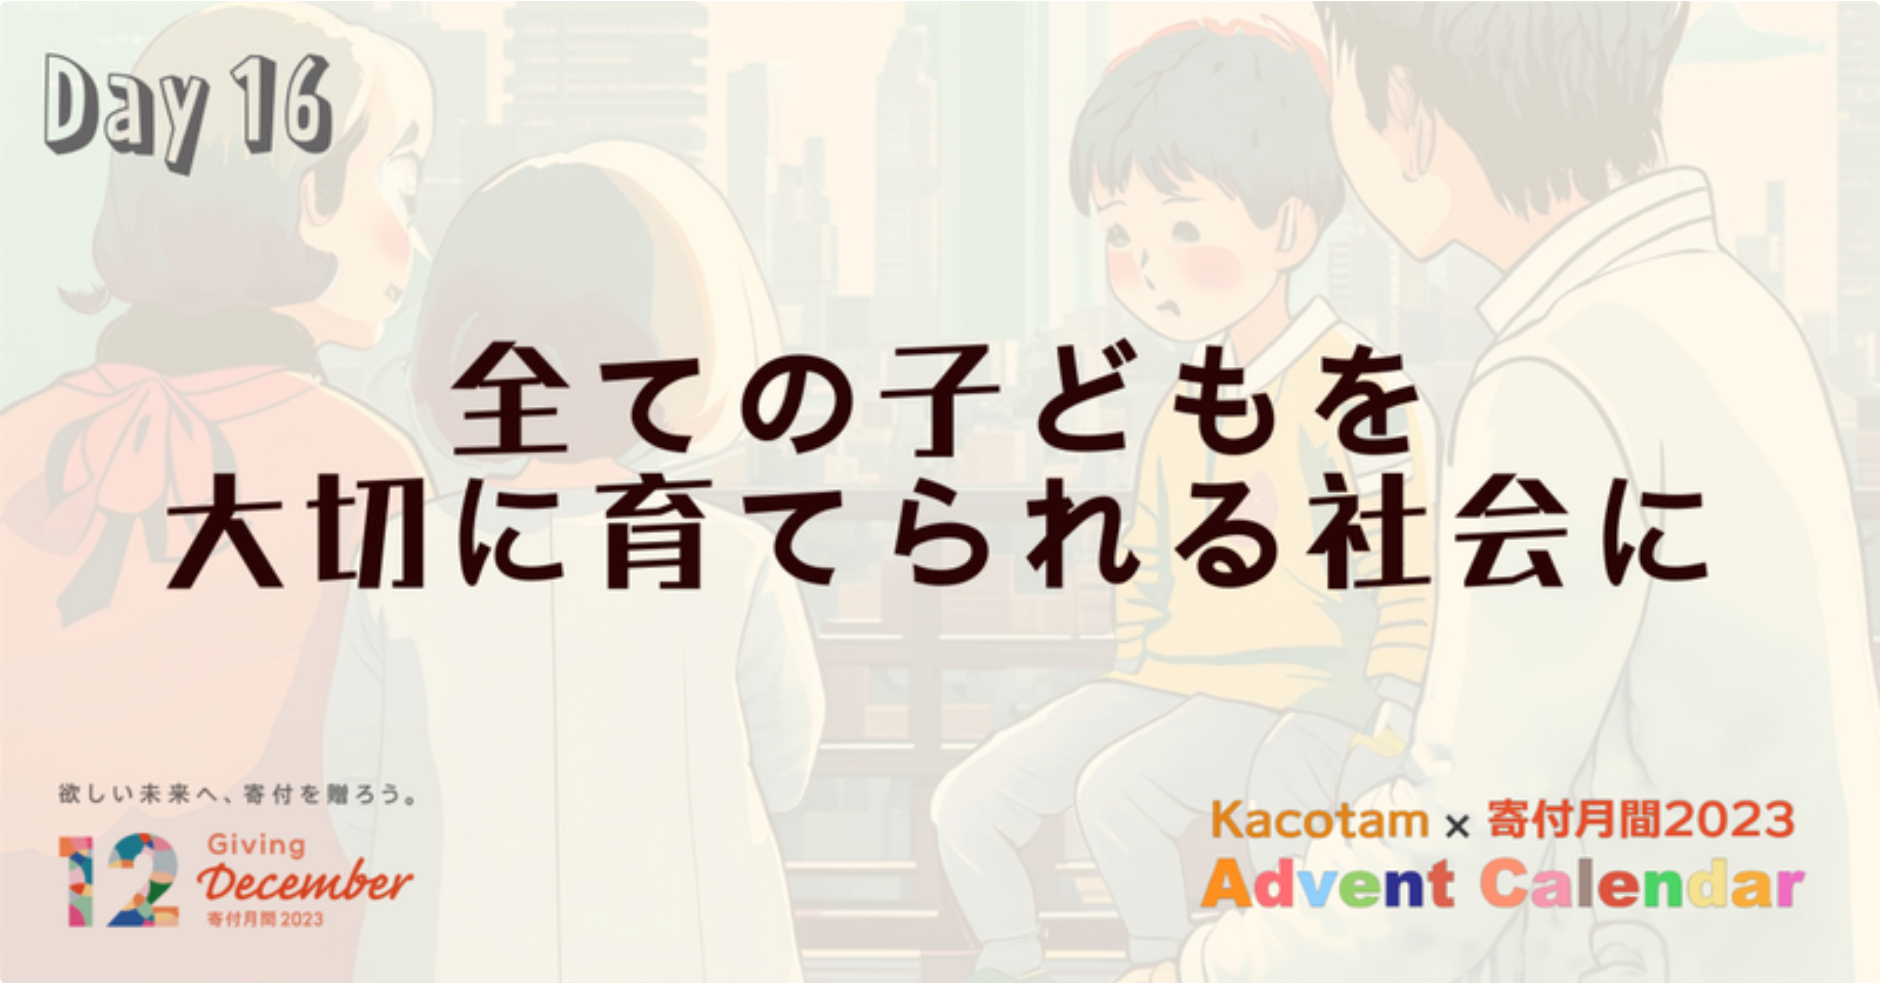 【16日目】「Kacotam x 寄付月間2023 アドベントカレンダー」の記事を公開しました